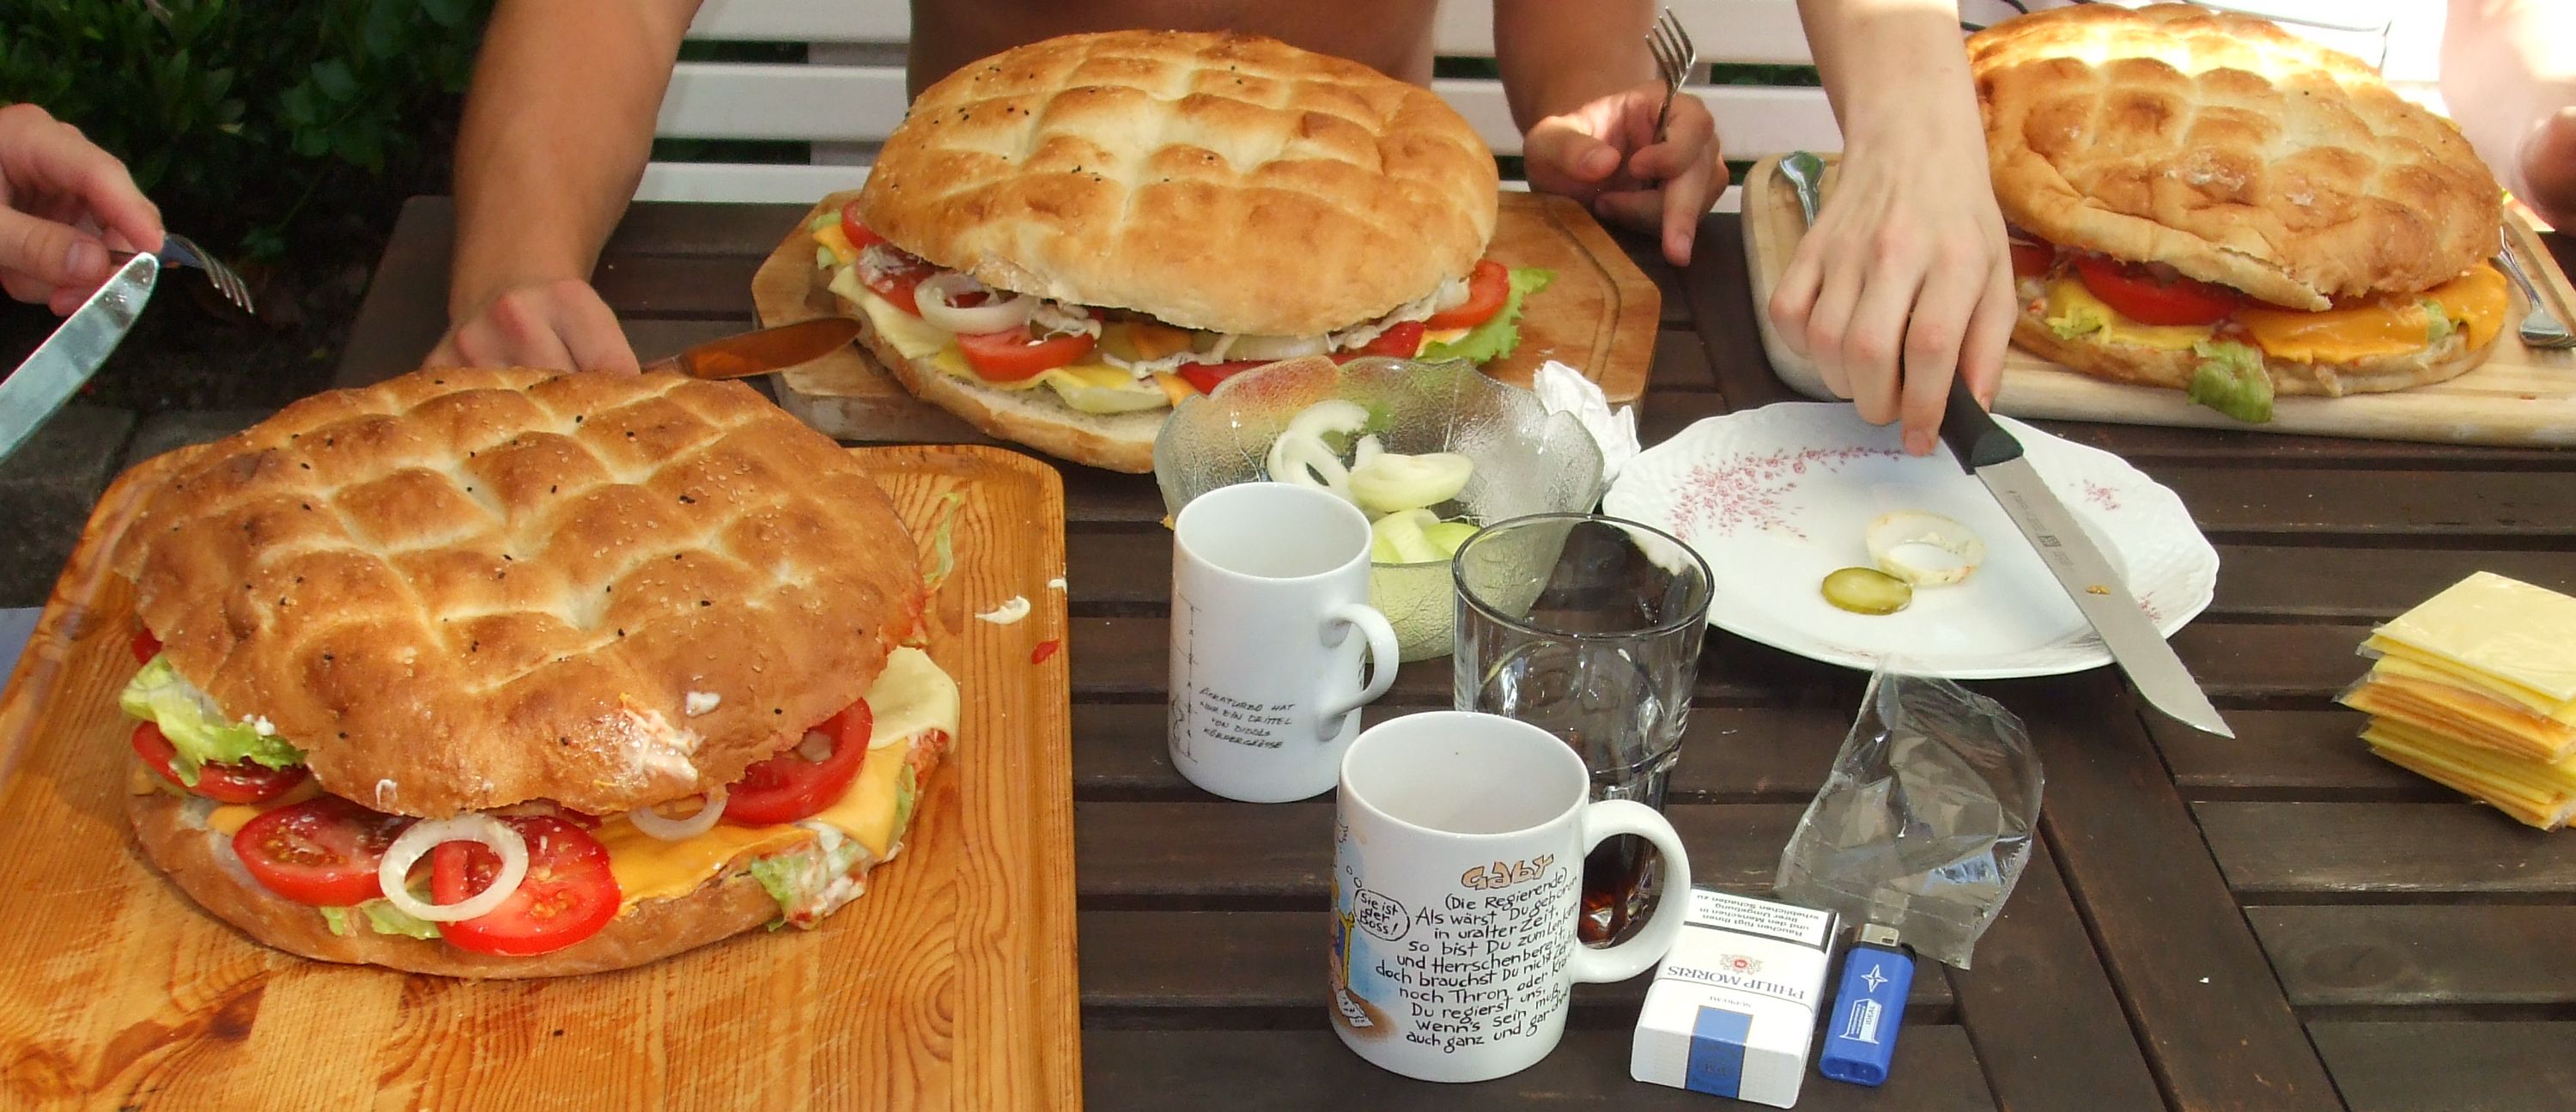 Bild: Riesenburger Aktion - Das Ergebnis :-)
Die Burger waren mega lecker. Ein Burger reicht für ca. 6 gute Esser :-)